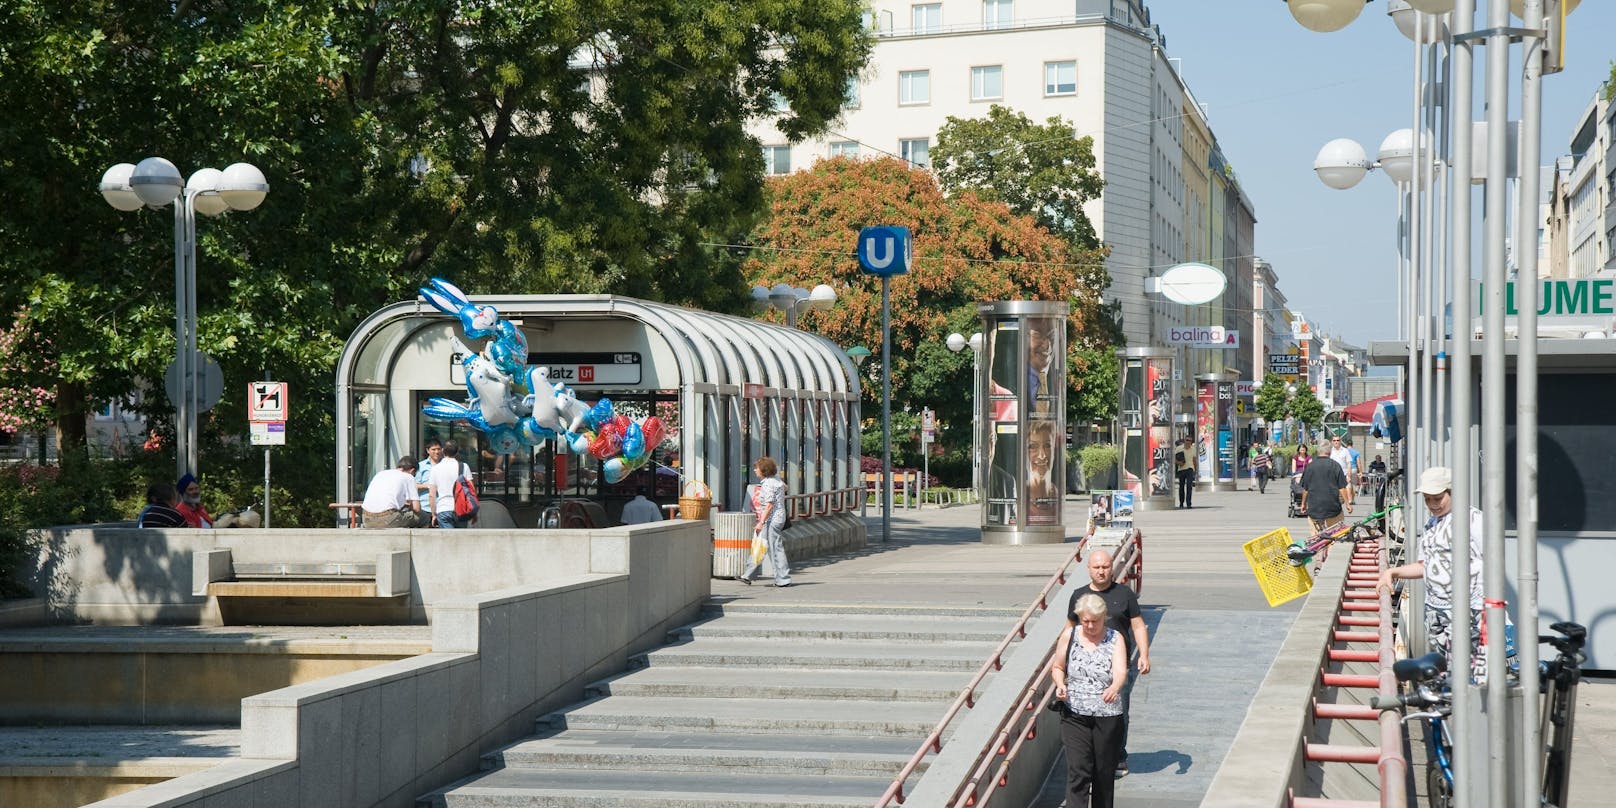 Fußgängerzone Favoriten mit U-Bahn-Station Keplerplatz. Symbolbild